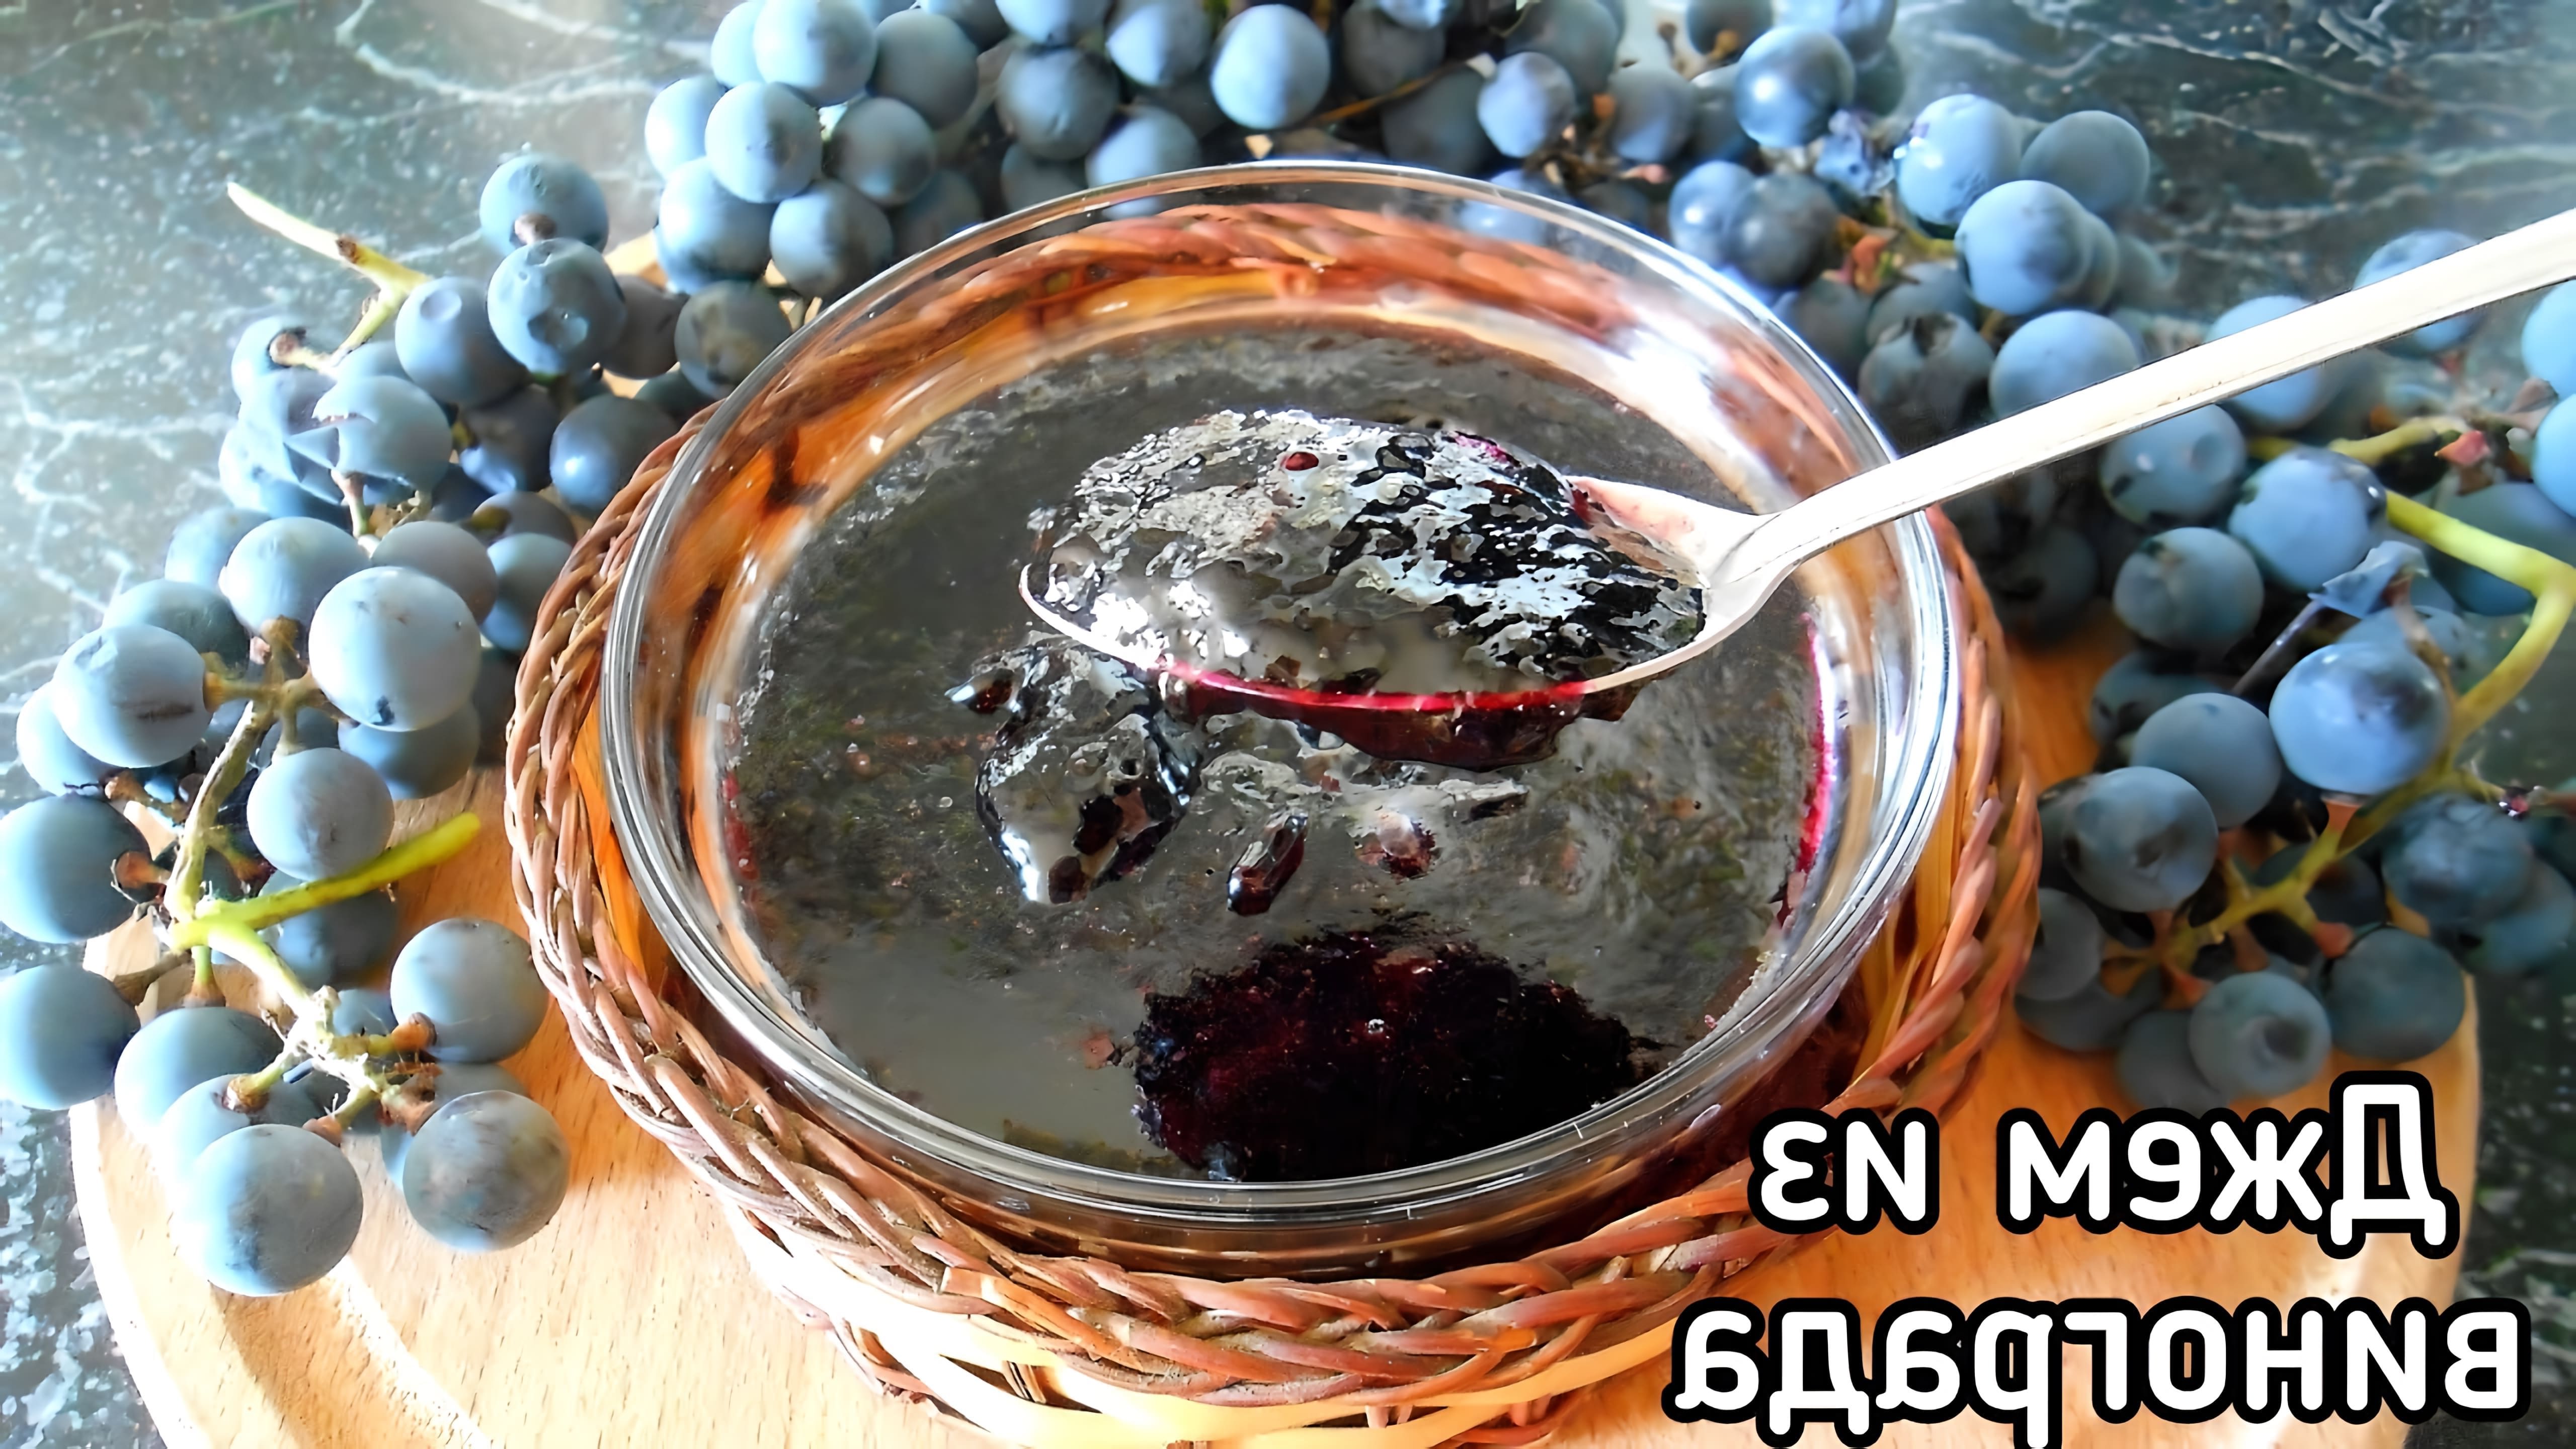 В этом видео-ролике вы увидите, как приготовить вкусный и ароматный джем из винограда